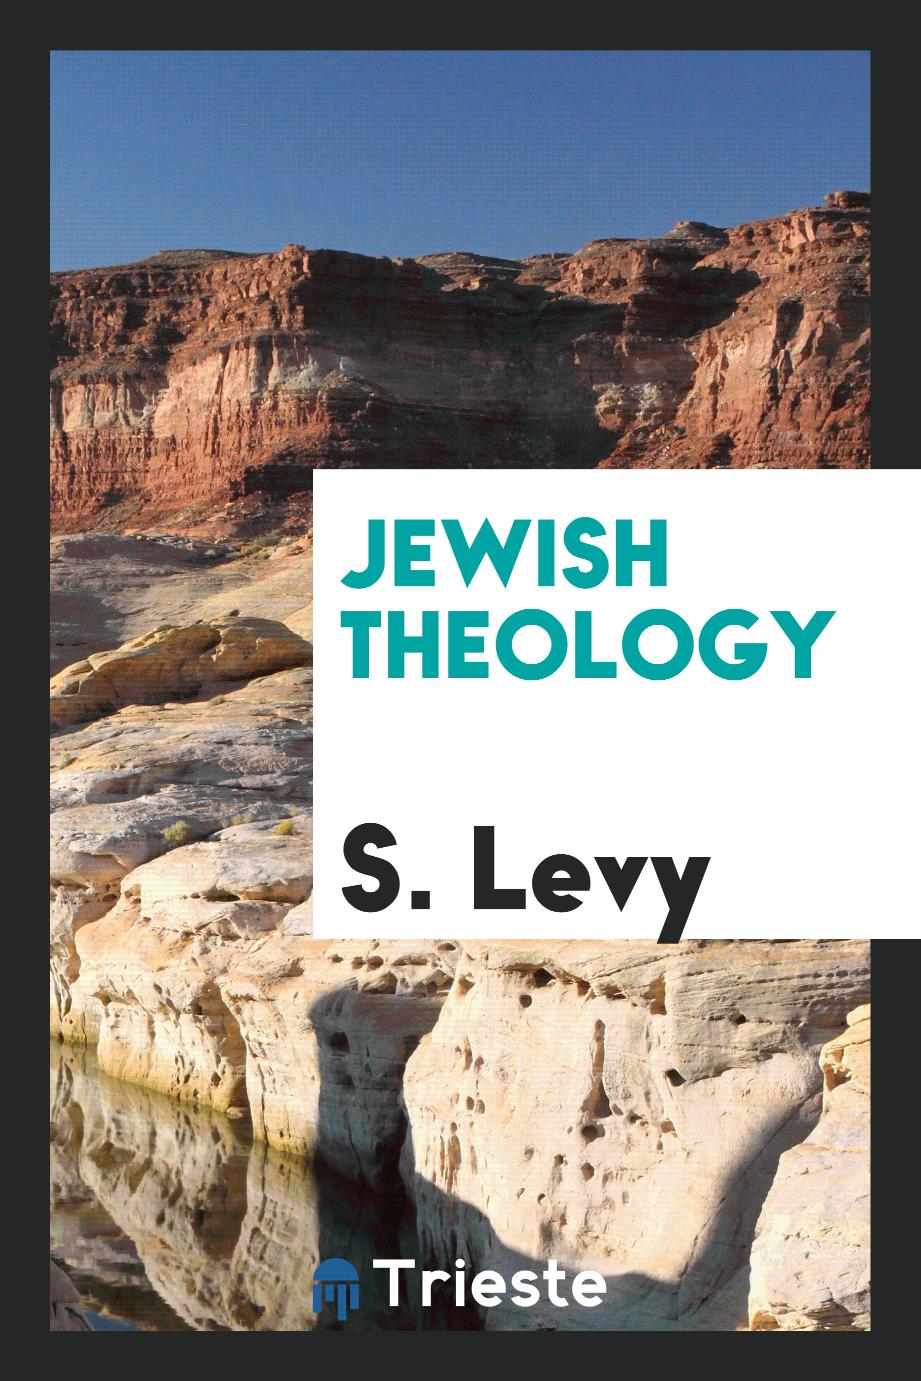 Jewish theology